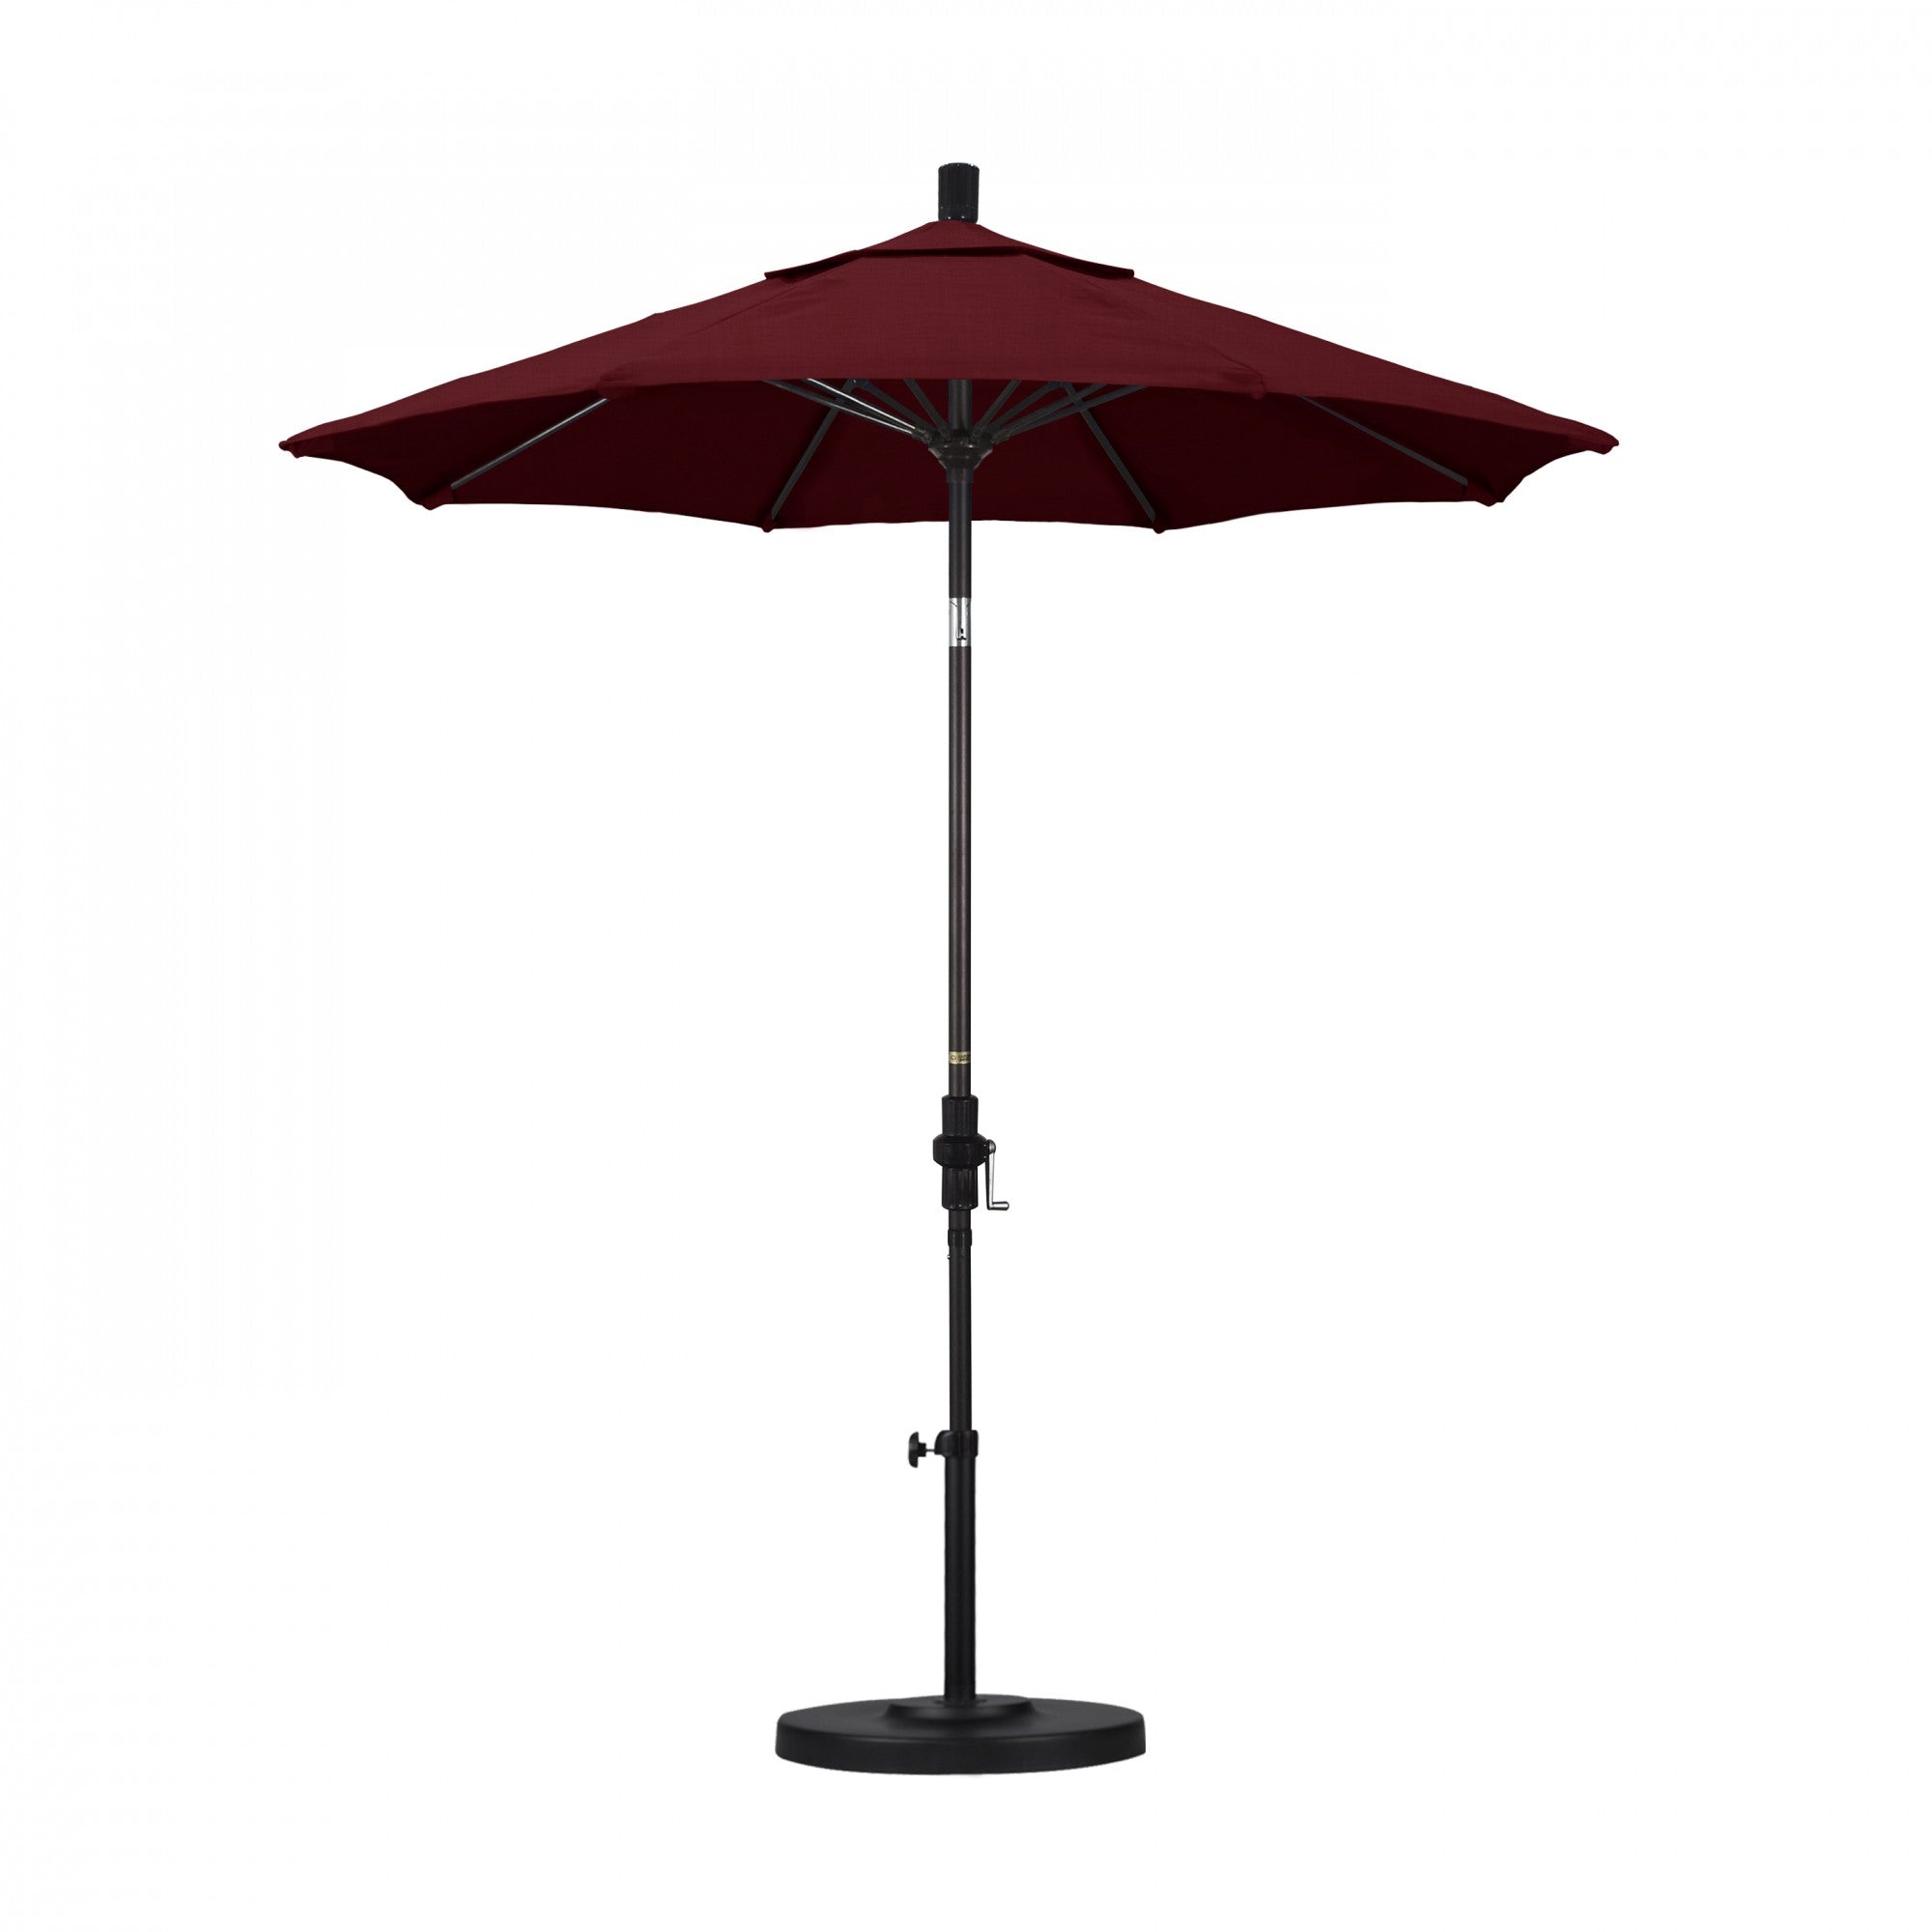 California Umbrella - 7.5' - Patio Umbrella Umbrella - Aluminum Pole - Spectrum Ruby - Sunbrella  - GSCUF758117-48095